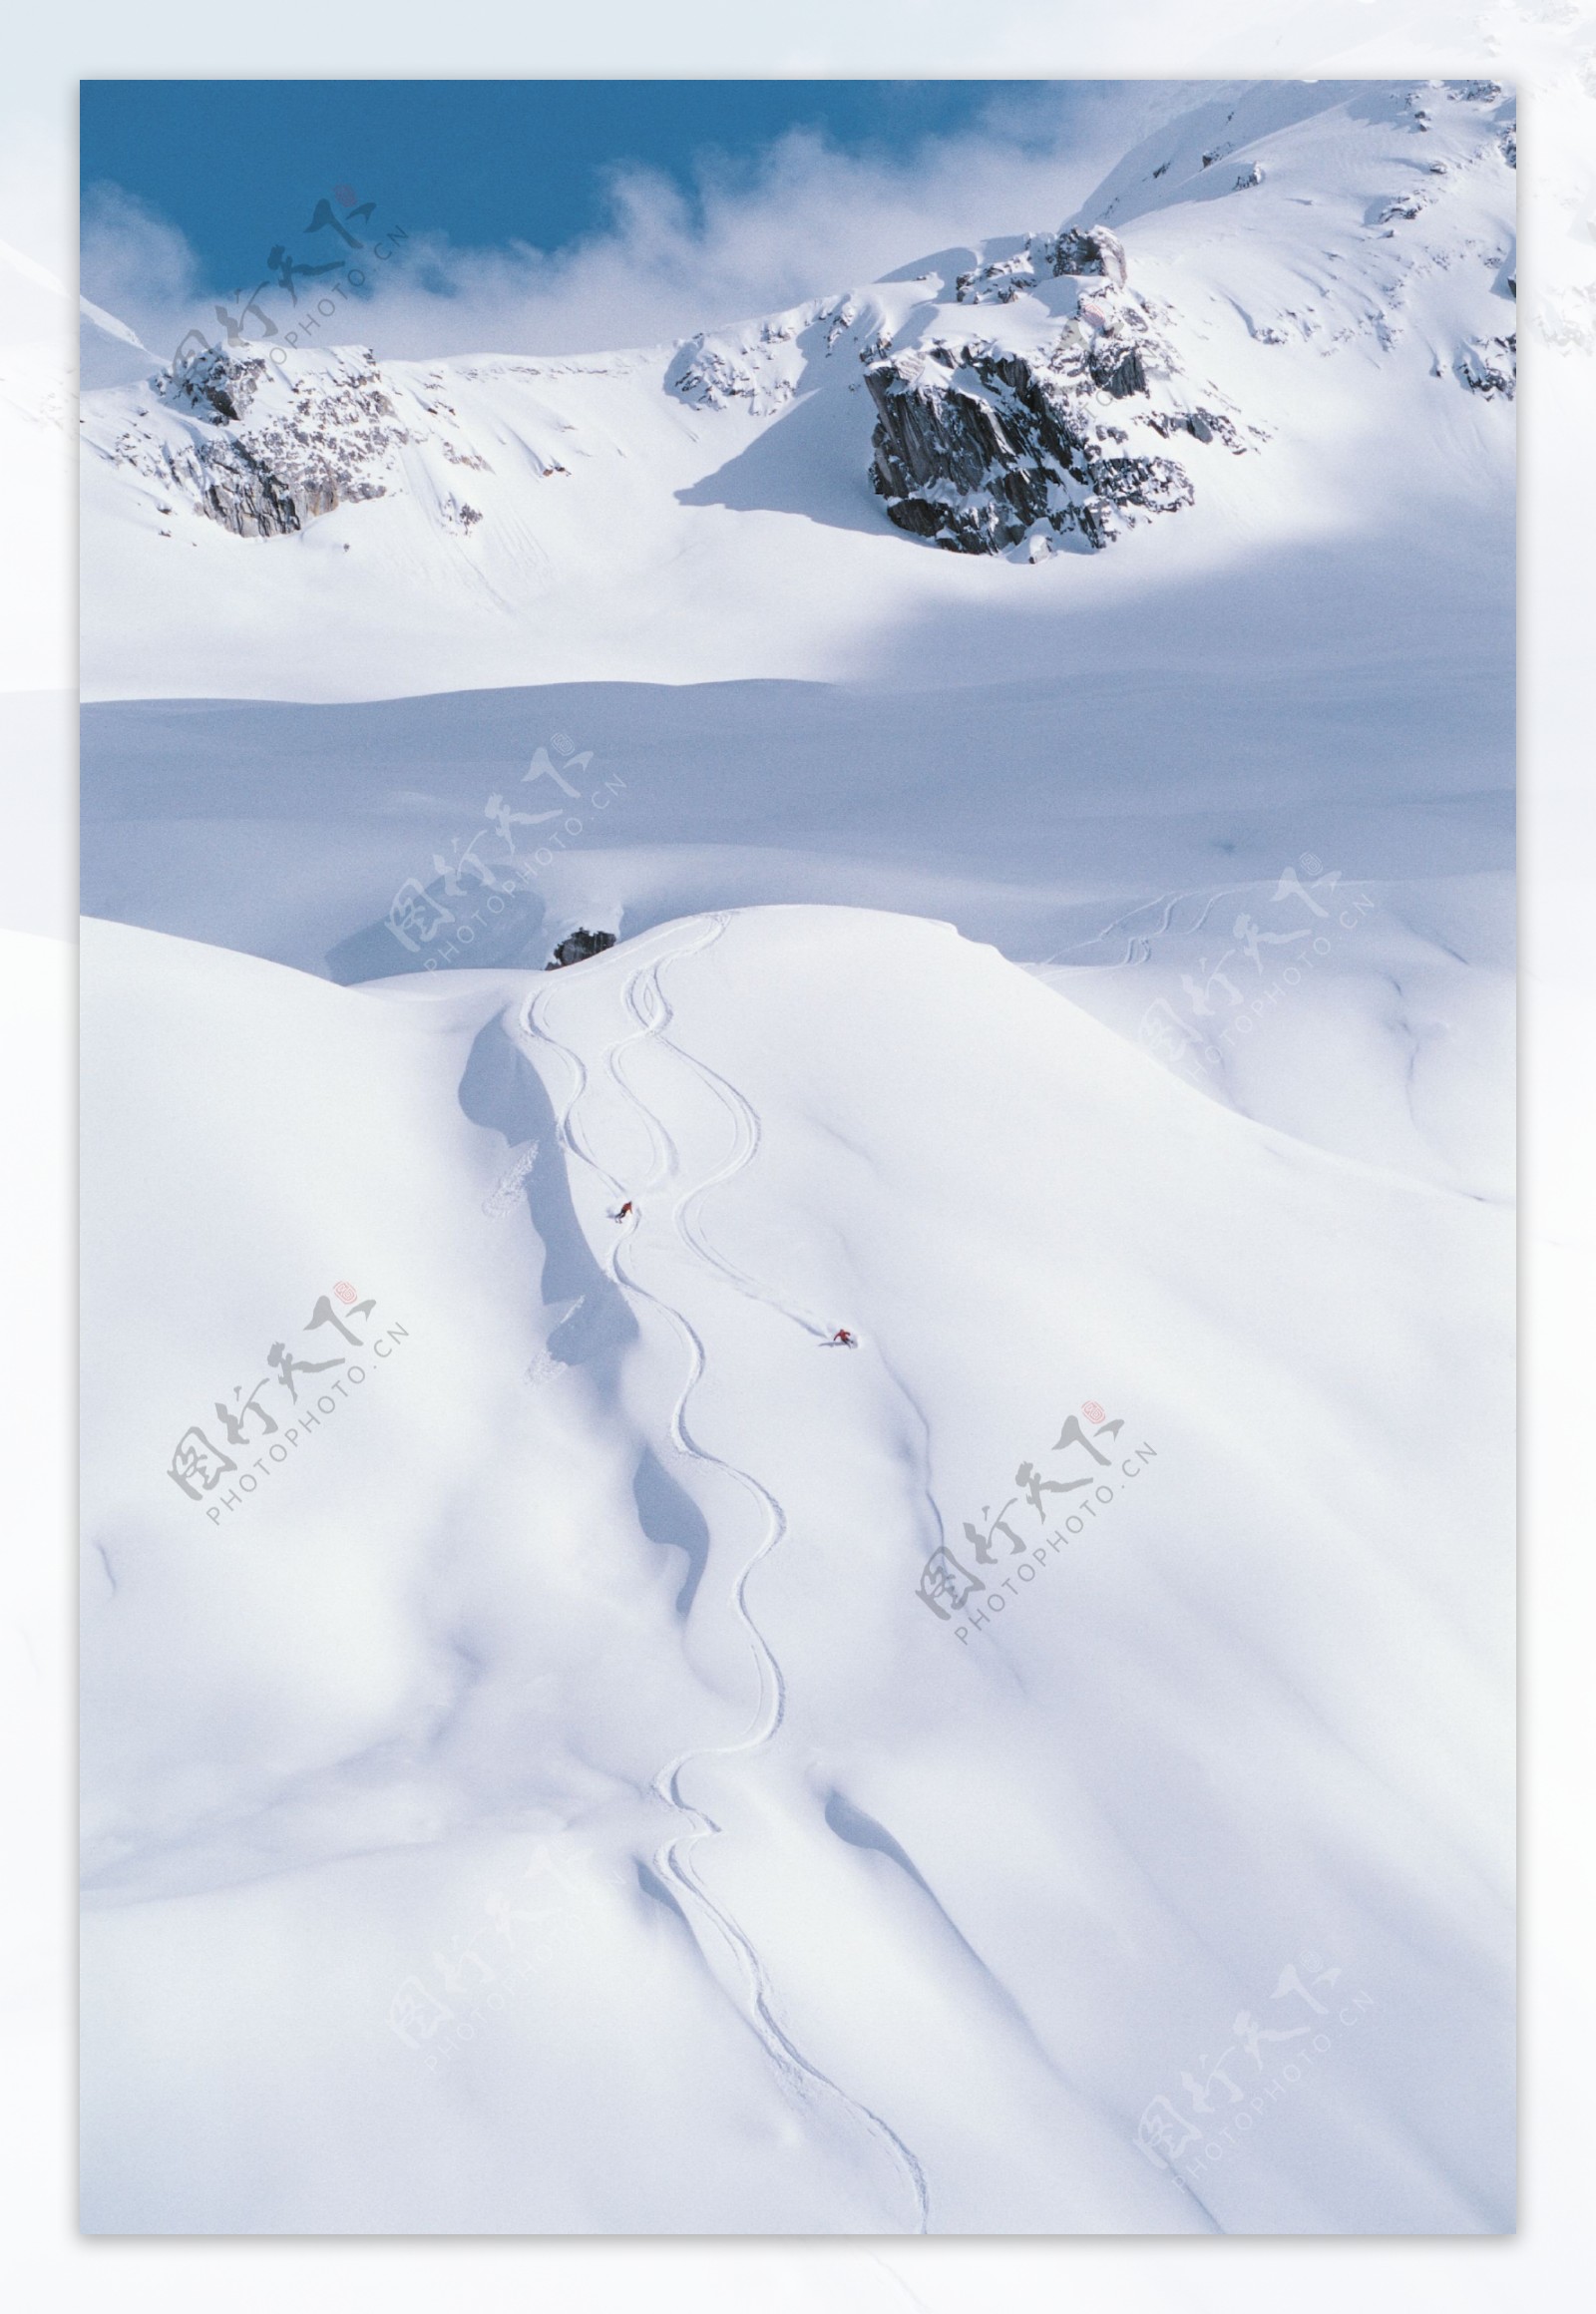 高山划雪远景摄影图片图片